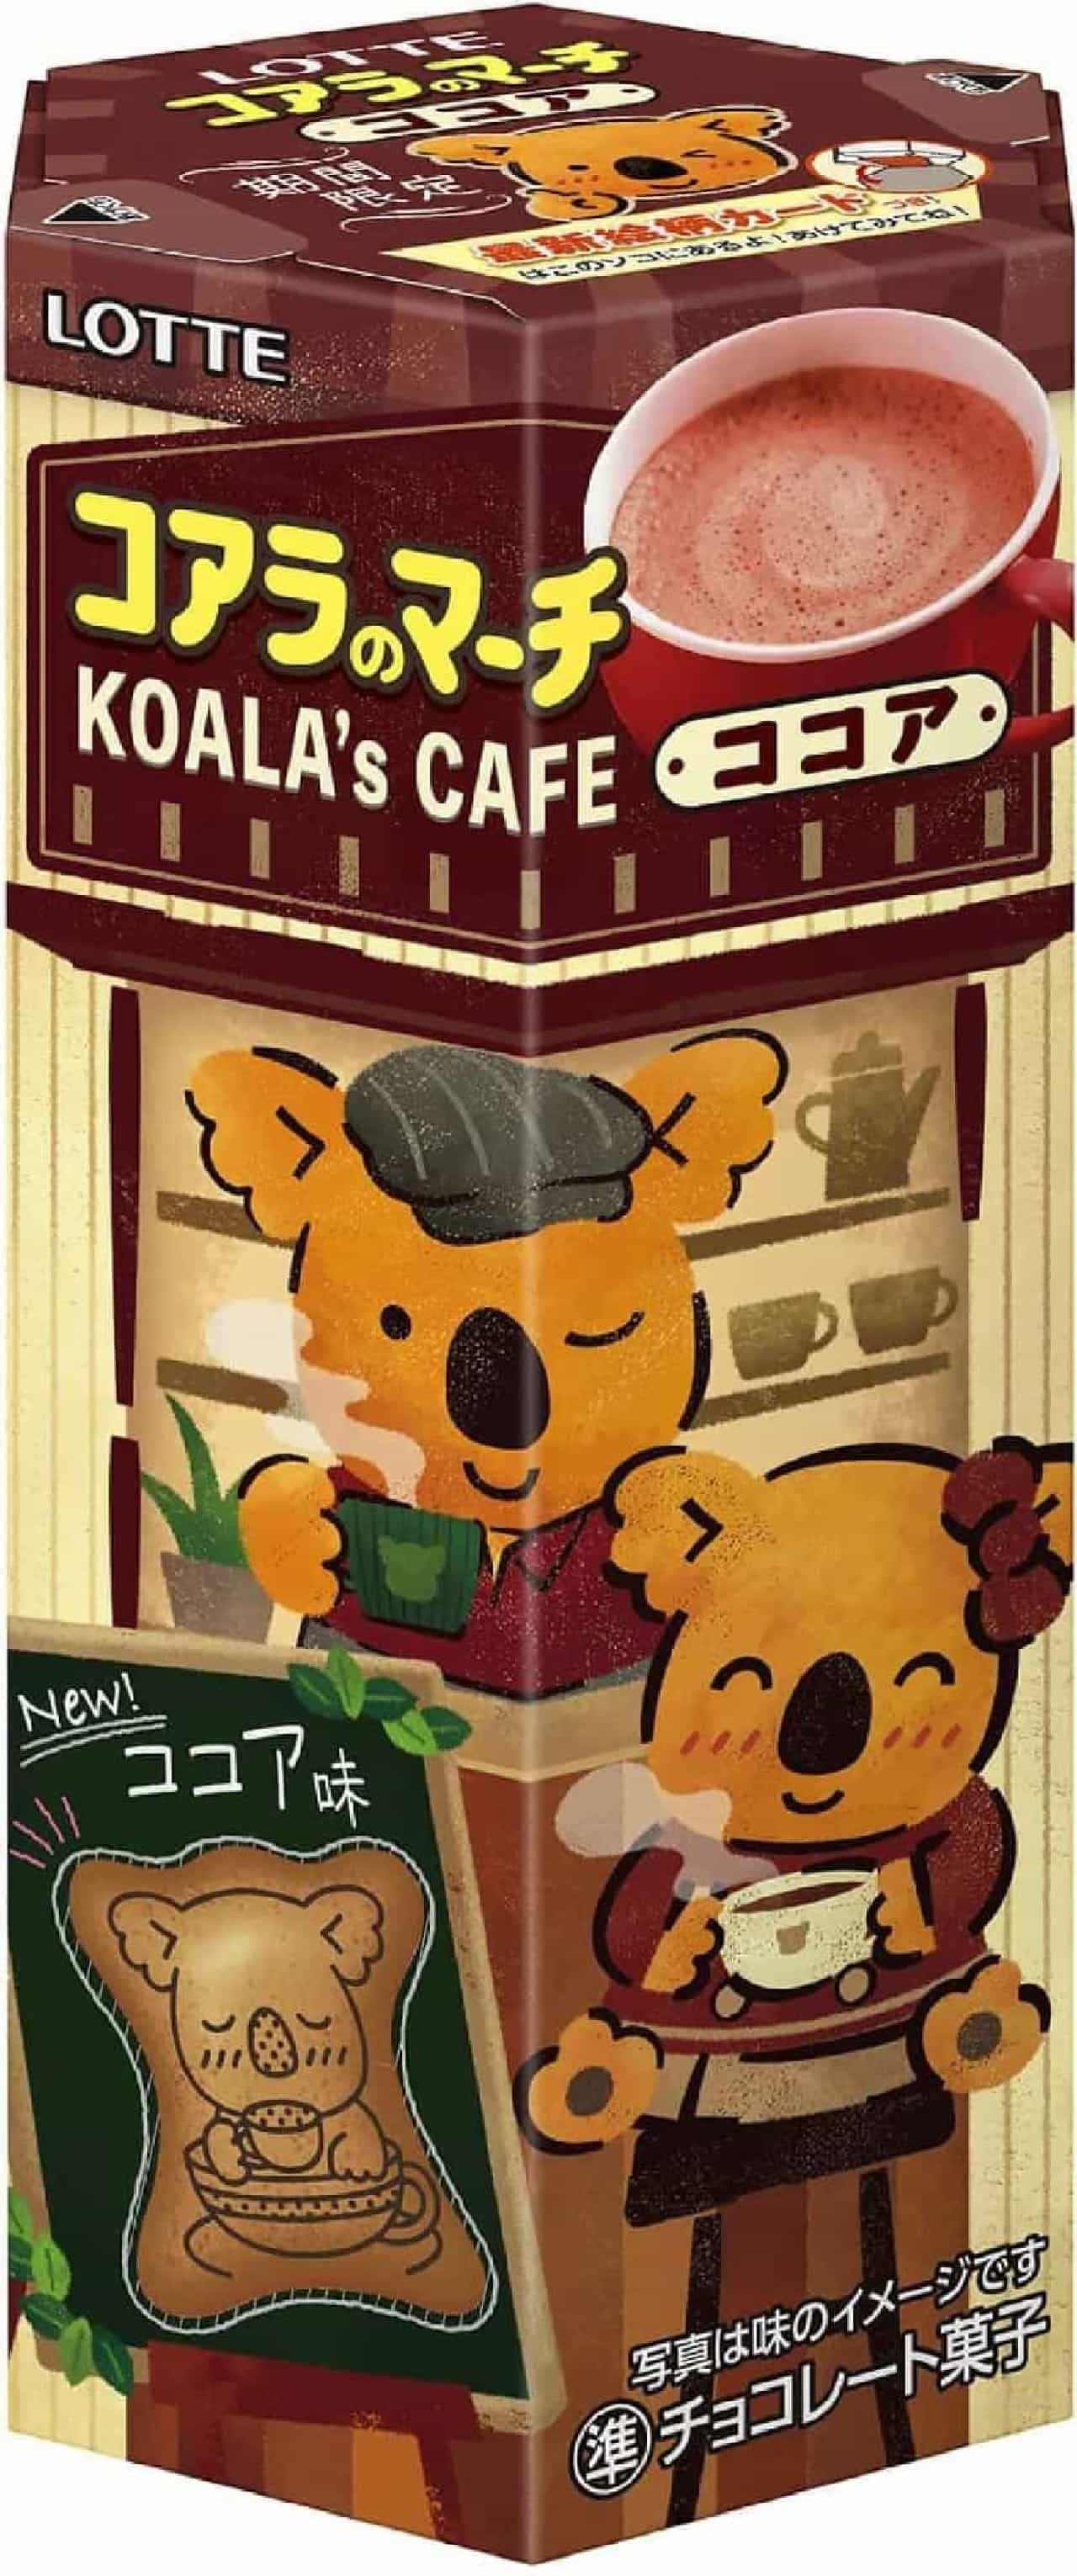 Lotte "Koala's March [KOALA'S CAFE Cocoa]"